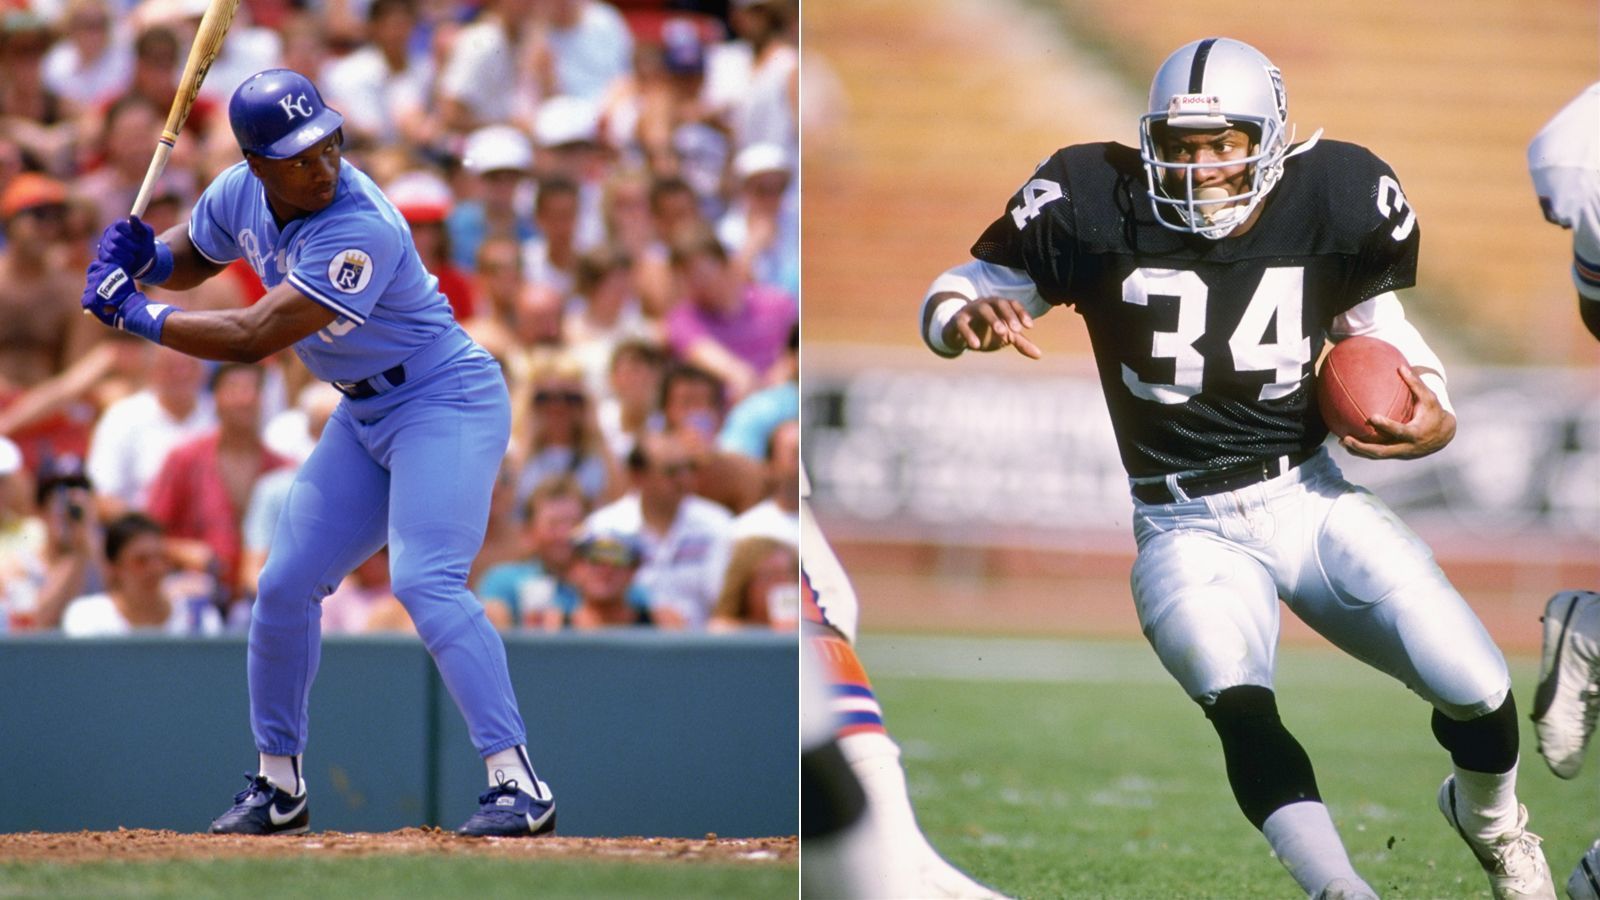 
                <strong>Bo Jackson</strong><br>
                Jackson wurde nicht nur 1986 in der vierten Runde von den Kansas City Royals gedraftet, er verbrachte auch sieben Profi-Jahre in der MLB und wurde 1989 zum MVP des Allstar-Games gewählt. In seiner knapp vierjährigen NFL-Karriere kam der Running Back auf einen Einsatz im Pro Bowl. Dabei war er 1986 sogar von den Tampa Bay Buccaneers an erster Stelle gedraftet worden, entschied sich aber gegen die NFL, spielte Baseball und meldete sich im Jahr später erneut zum Draft an. An 183. Stelle ging er an die Los Angeles Raiders. Jackson ist der einzige Spieler, der es sowohl in der MLB als auch in der NFL ins All Star Game bzw. den Pro Bowl geschafft hat.
              